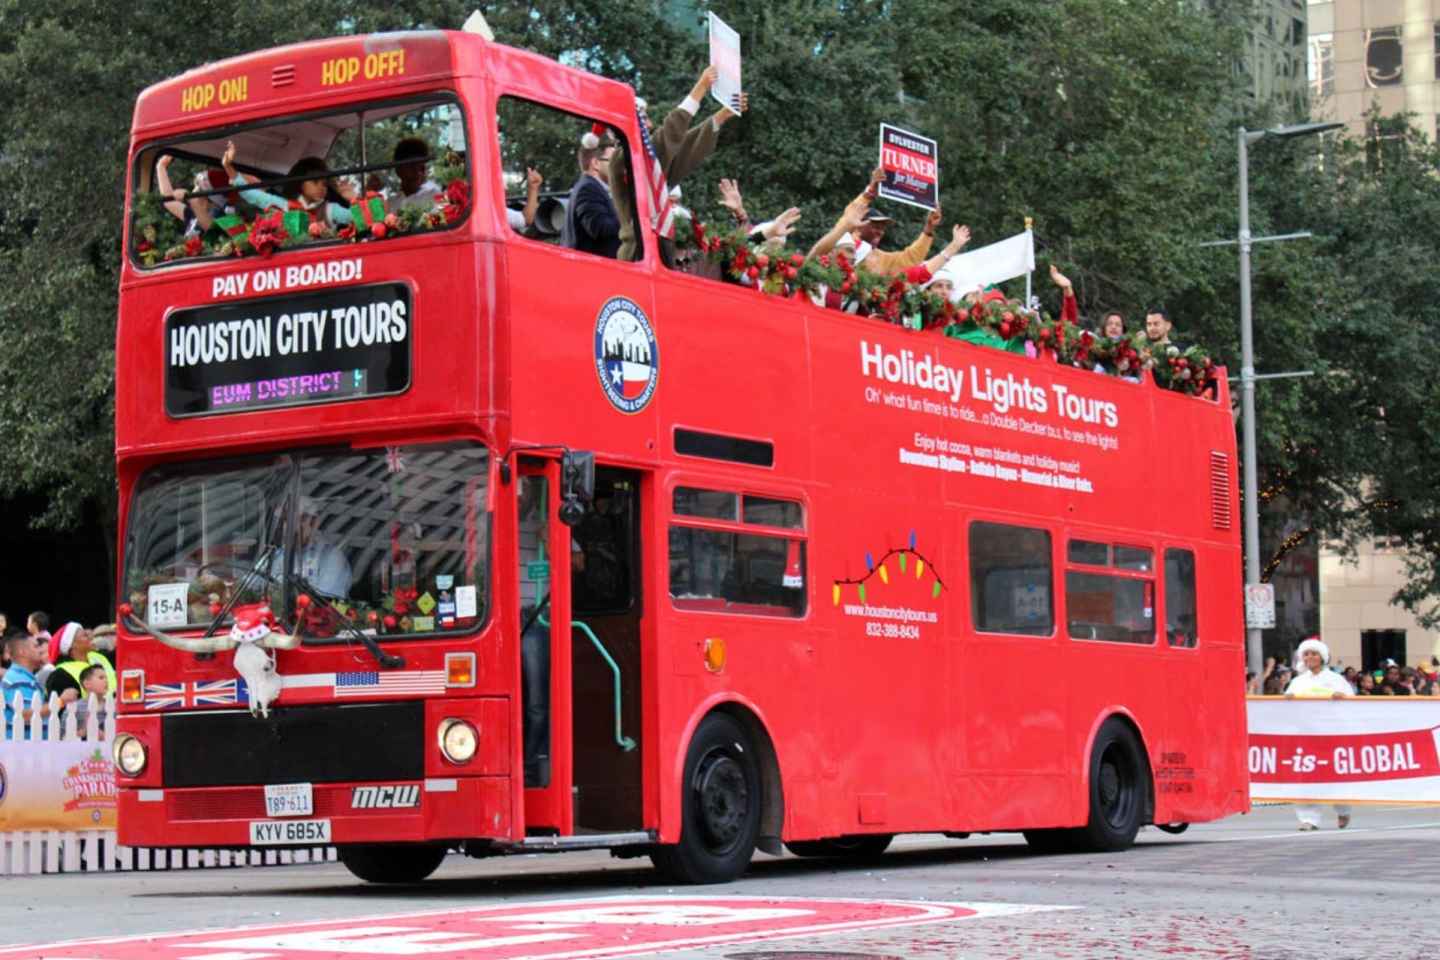 bus tours in houston